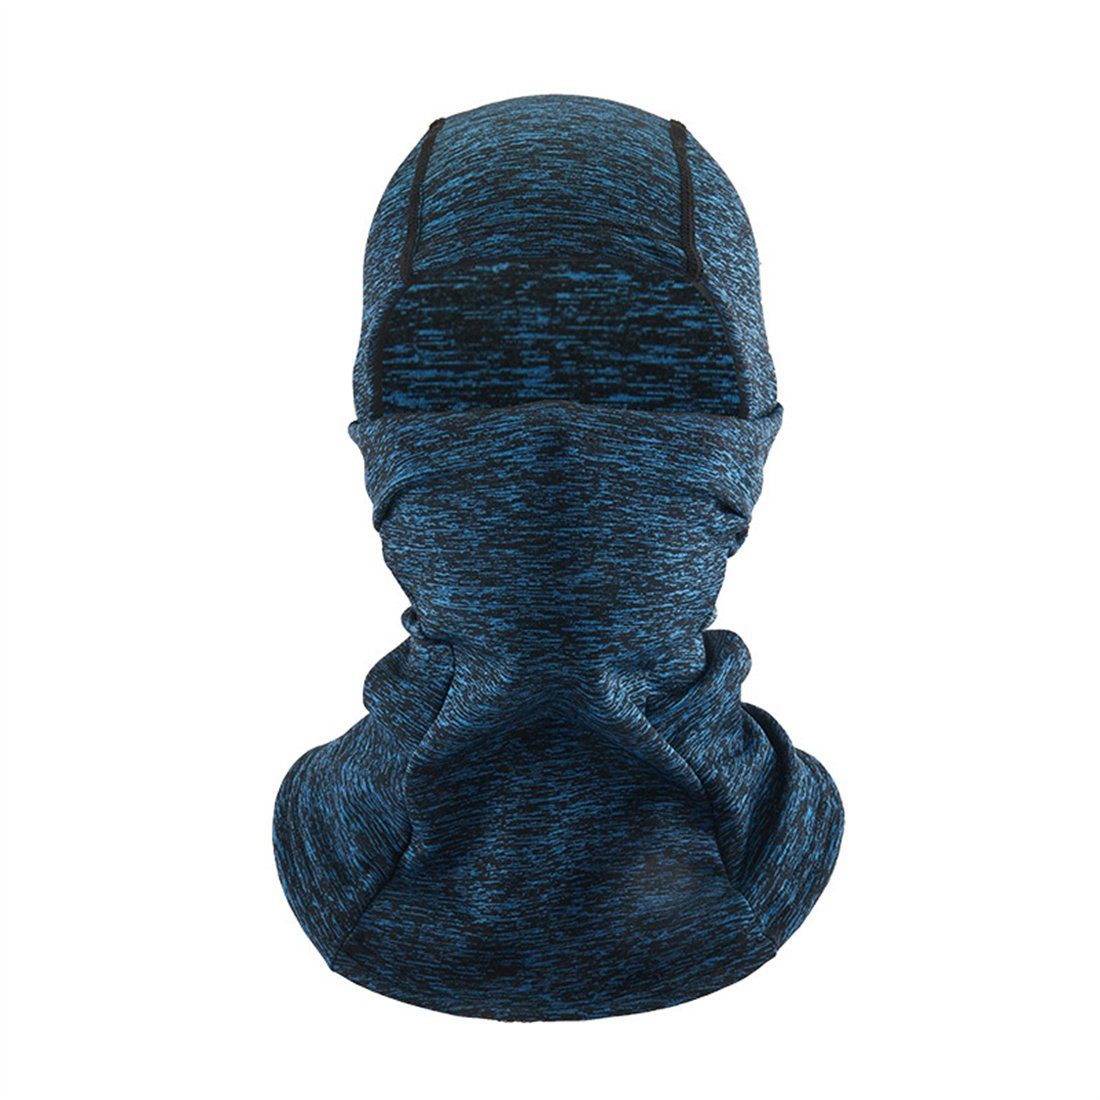 Maske, unisex Winter warme kalte blau Ski Sturmhaube DÖRÖY Radfahren Kopfbedeckung,